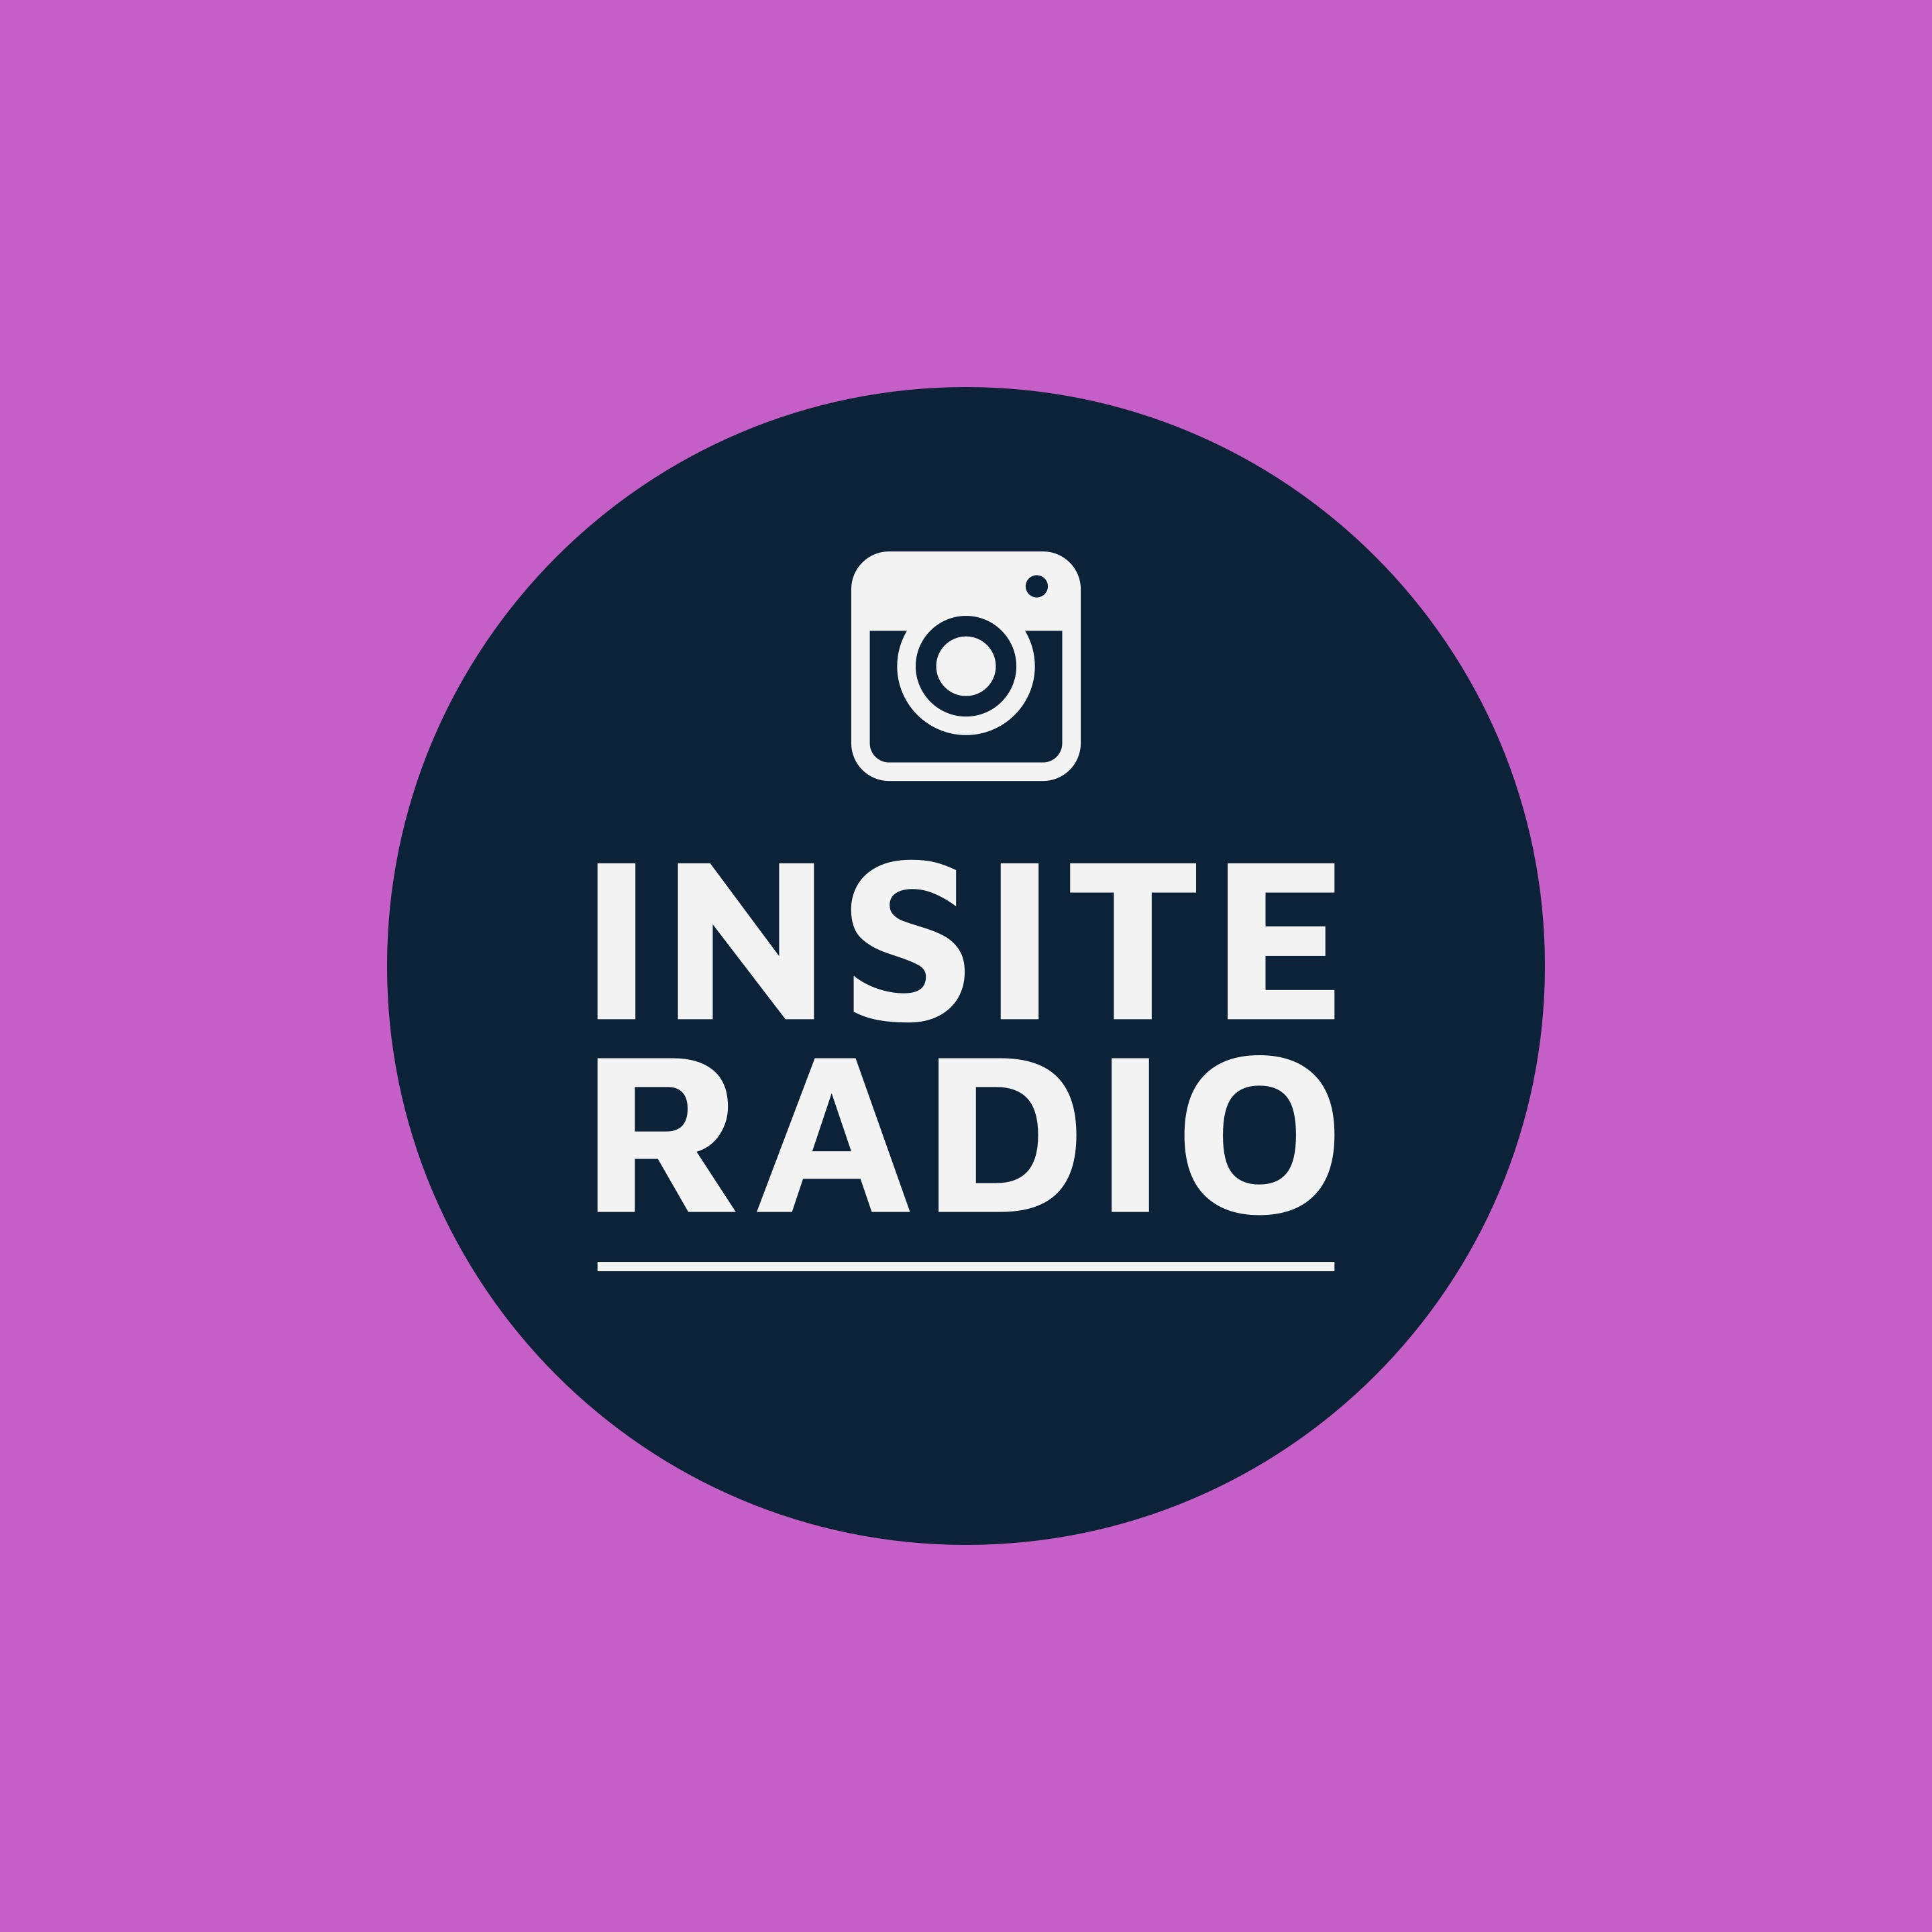 Insite Radio